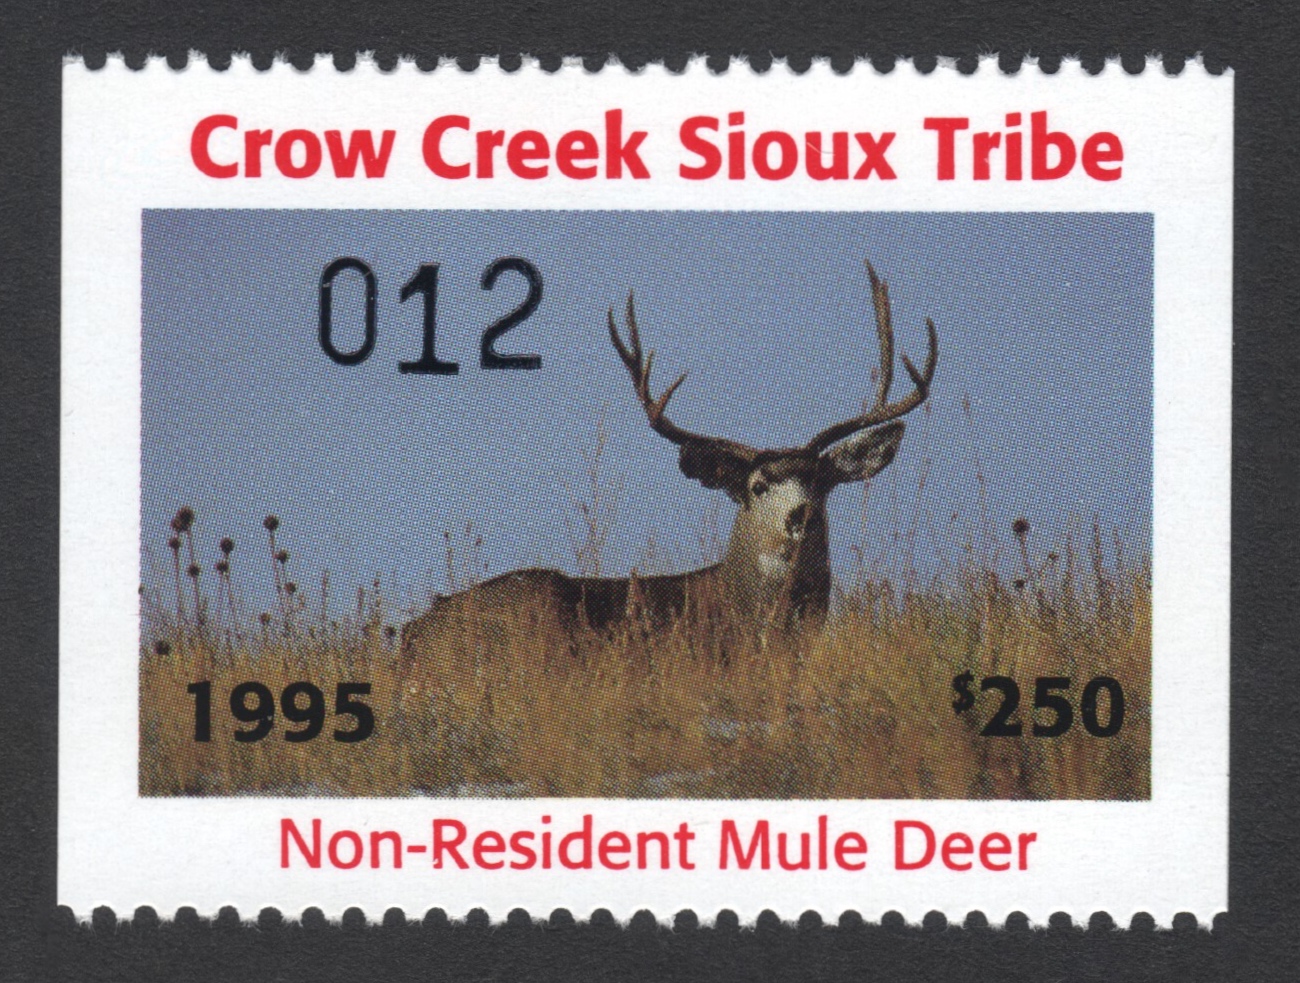 1995 Crow Creek NR Mule Deer